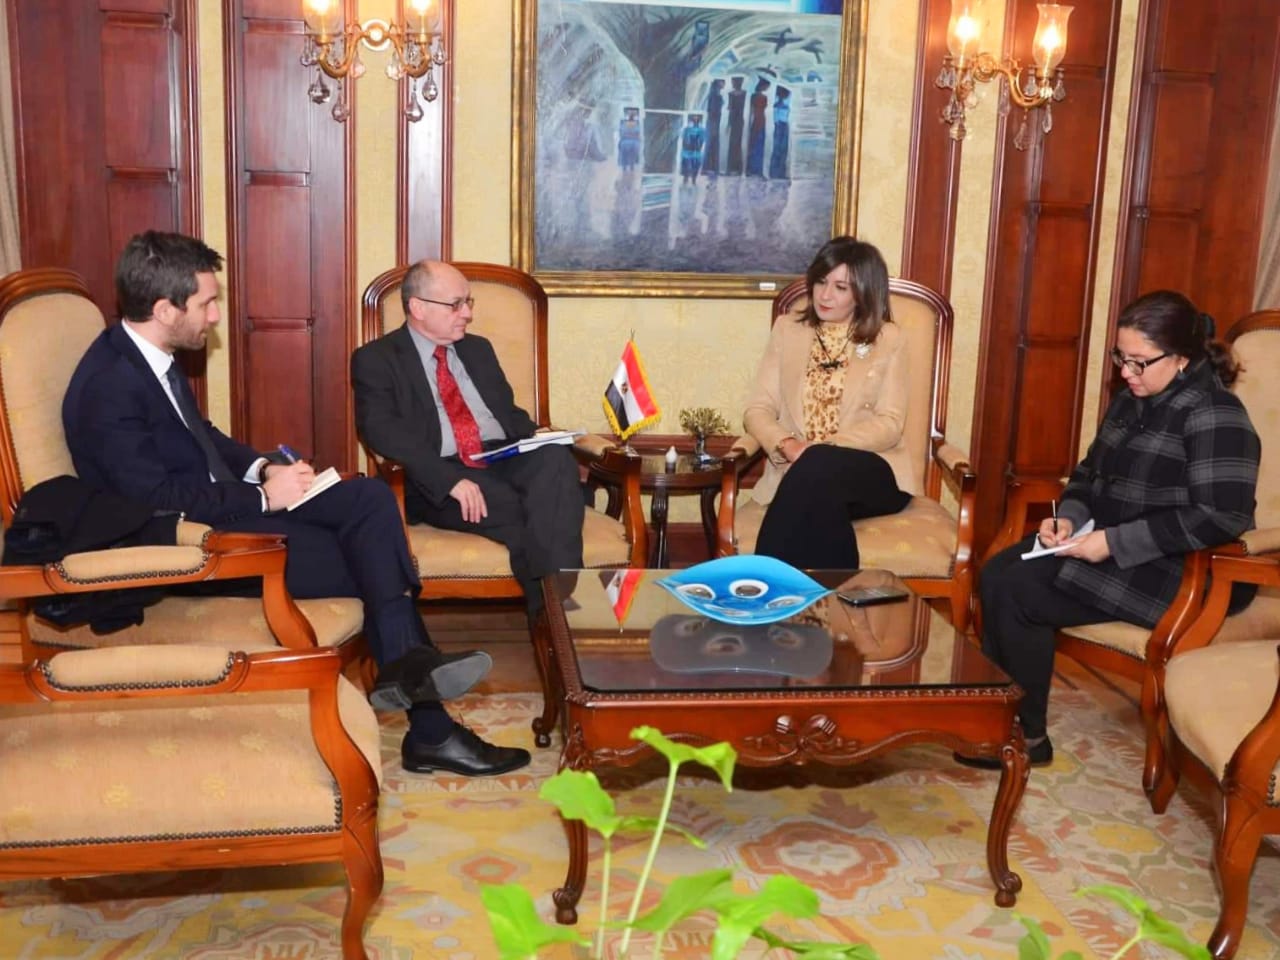   وزيرة الهجرة تستقبل سفير قبرص في مصر لبحث ترتيبات برنامج زيارة شباب قبارصة ويونانيين إلى مصر